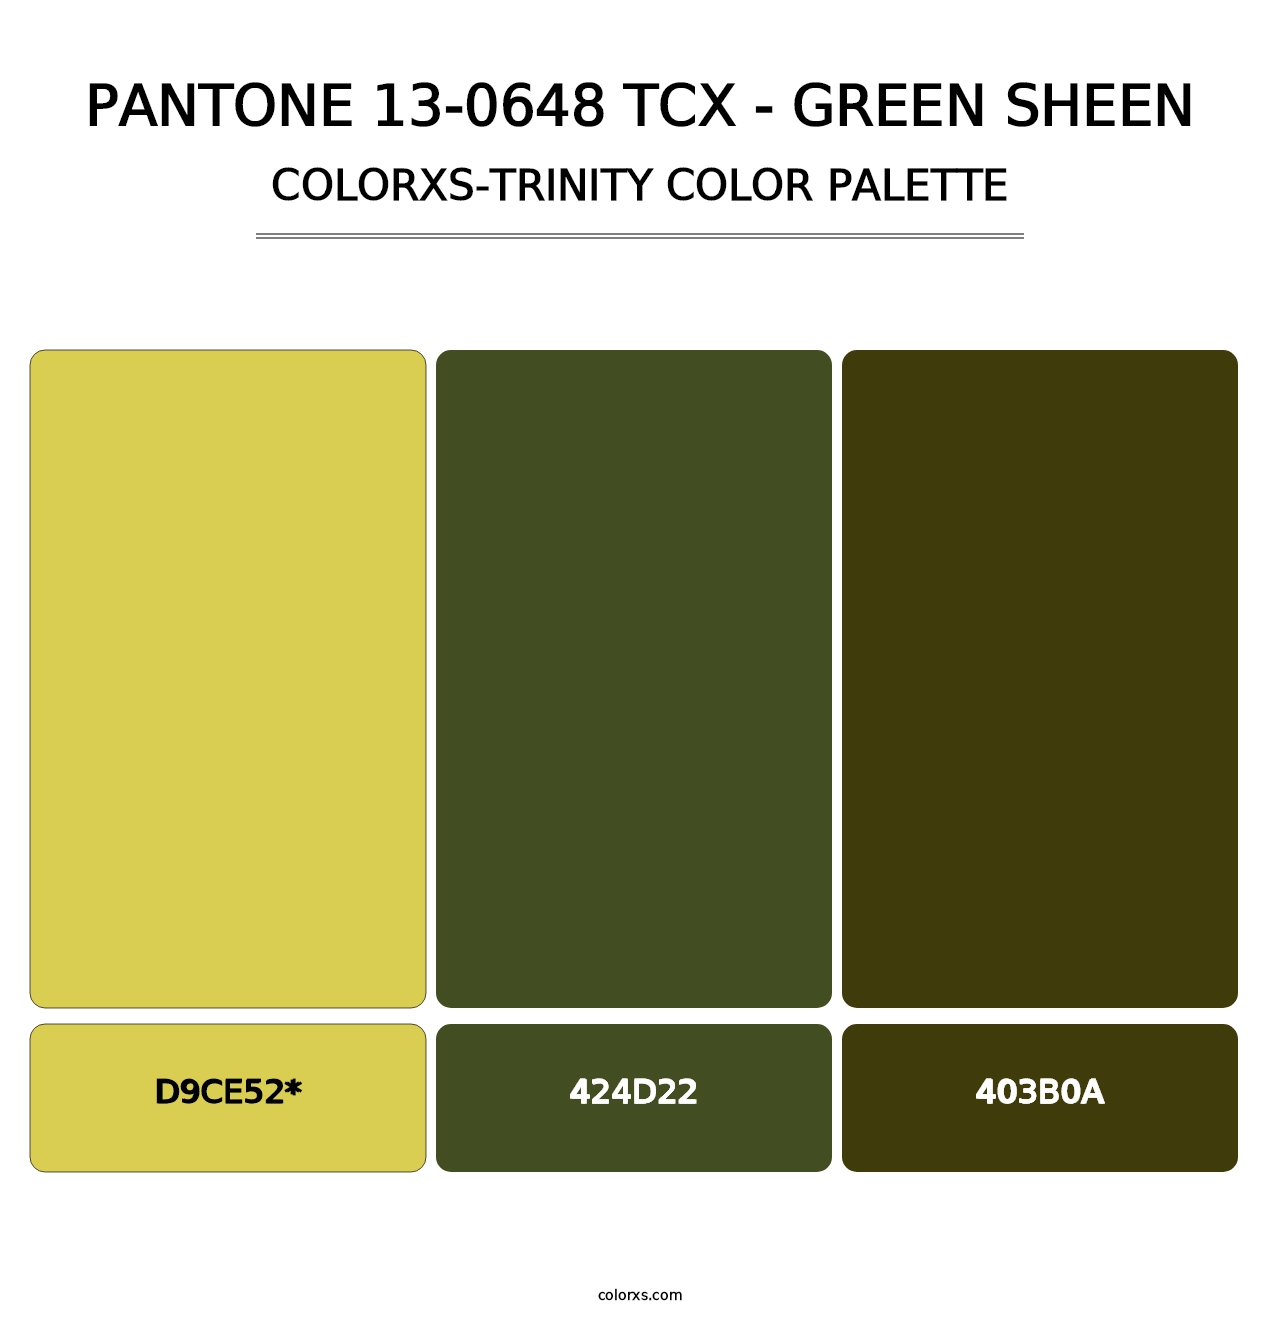 PANTONE 13-0648 TCX - Green Sheen - Colorxs Trinity Palette